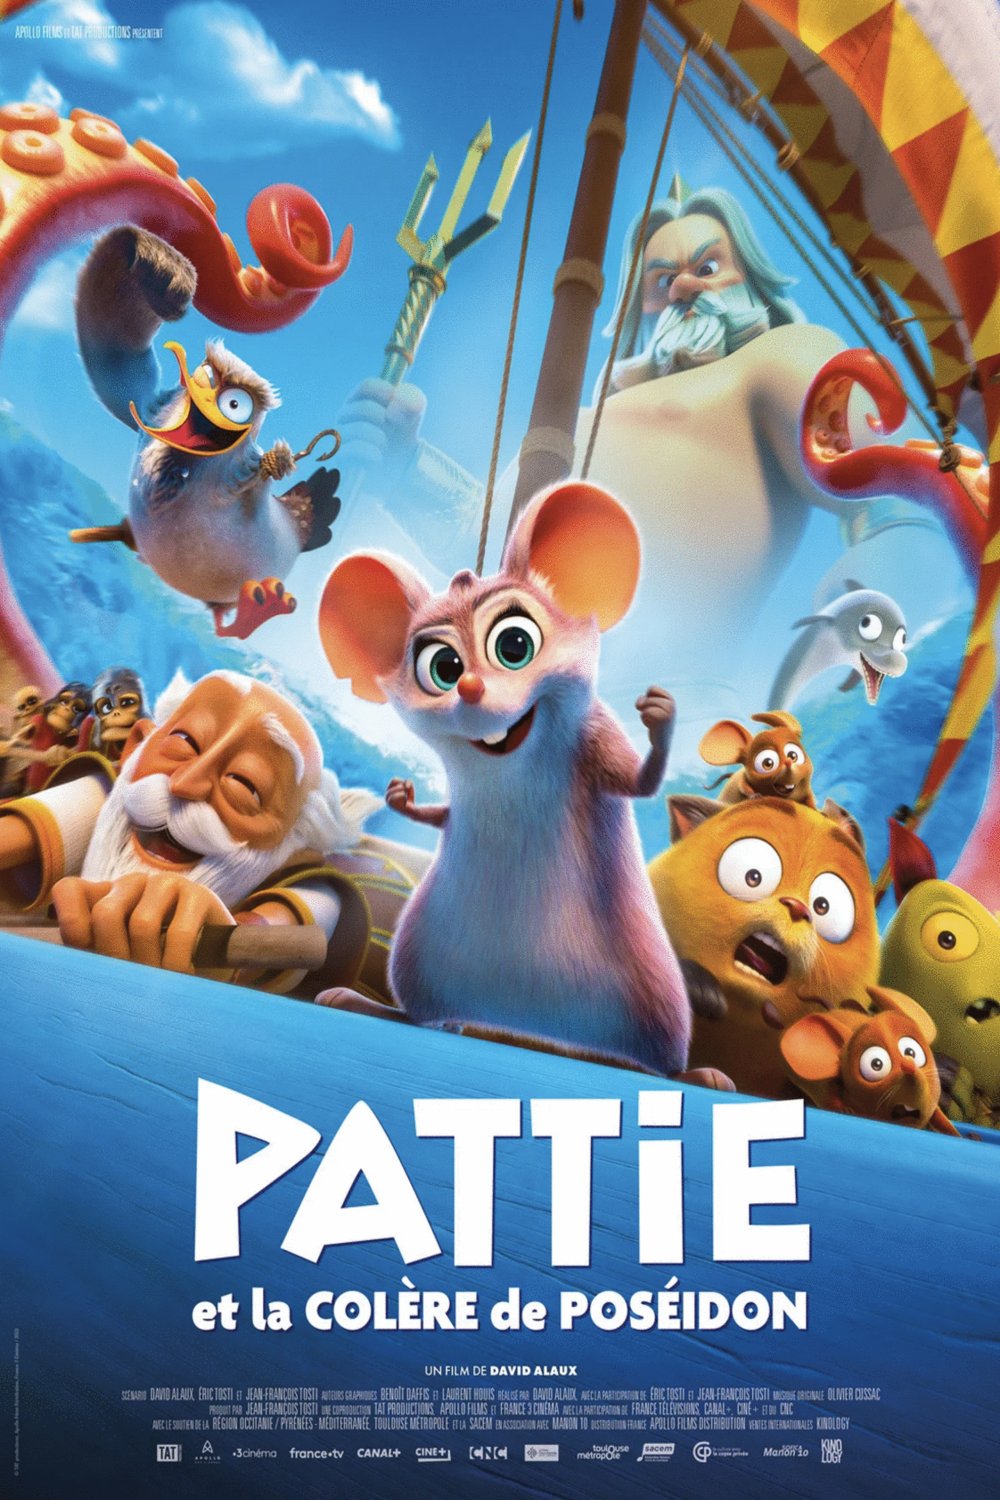 Poster of the movie Pattie et la colère de Poséidon